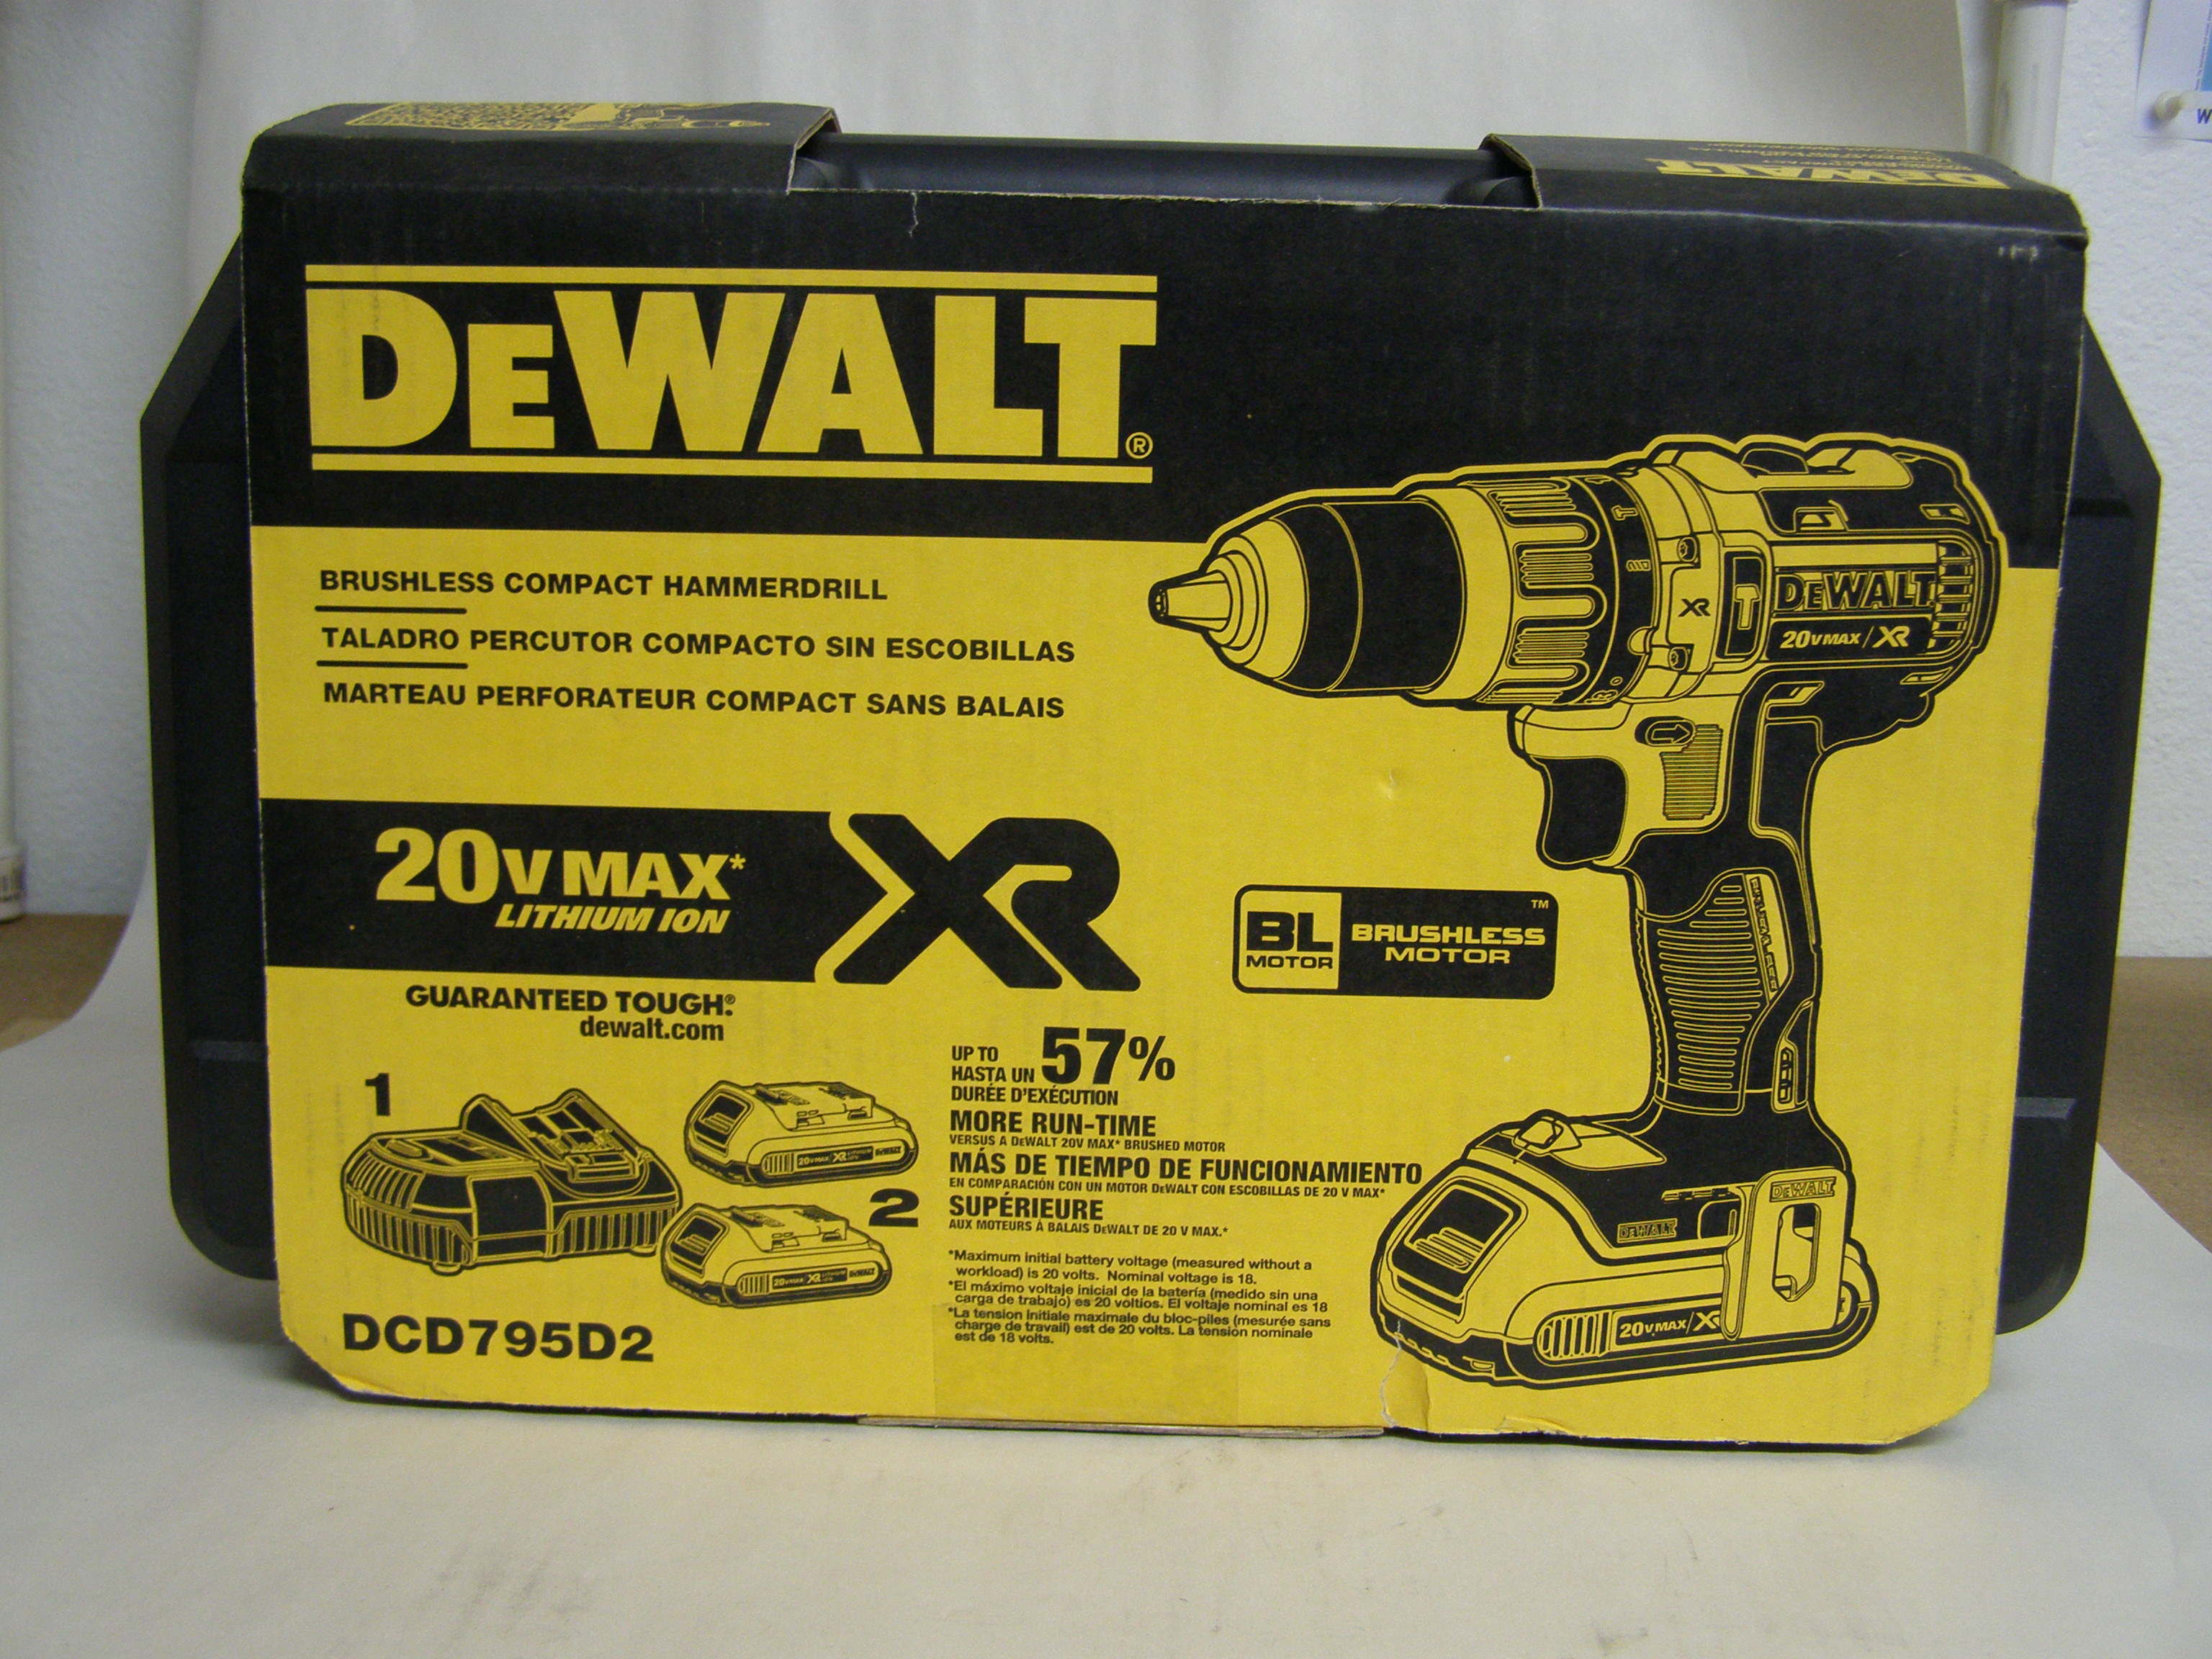 DeWalt Hammer Drill Kit 20V MAX* XR Lithium Ion Brushless Compact Hammerdrill Kit
DCD795D2